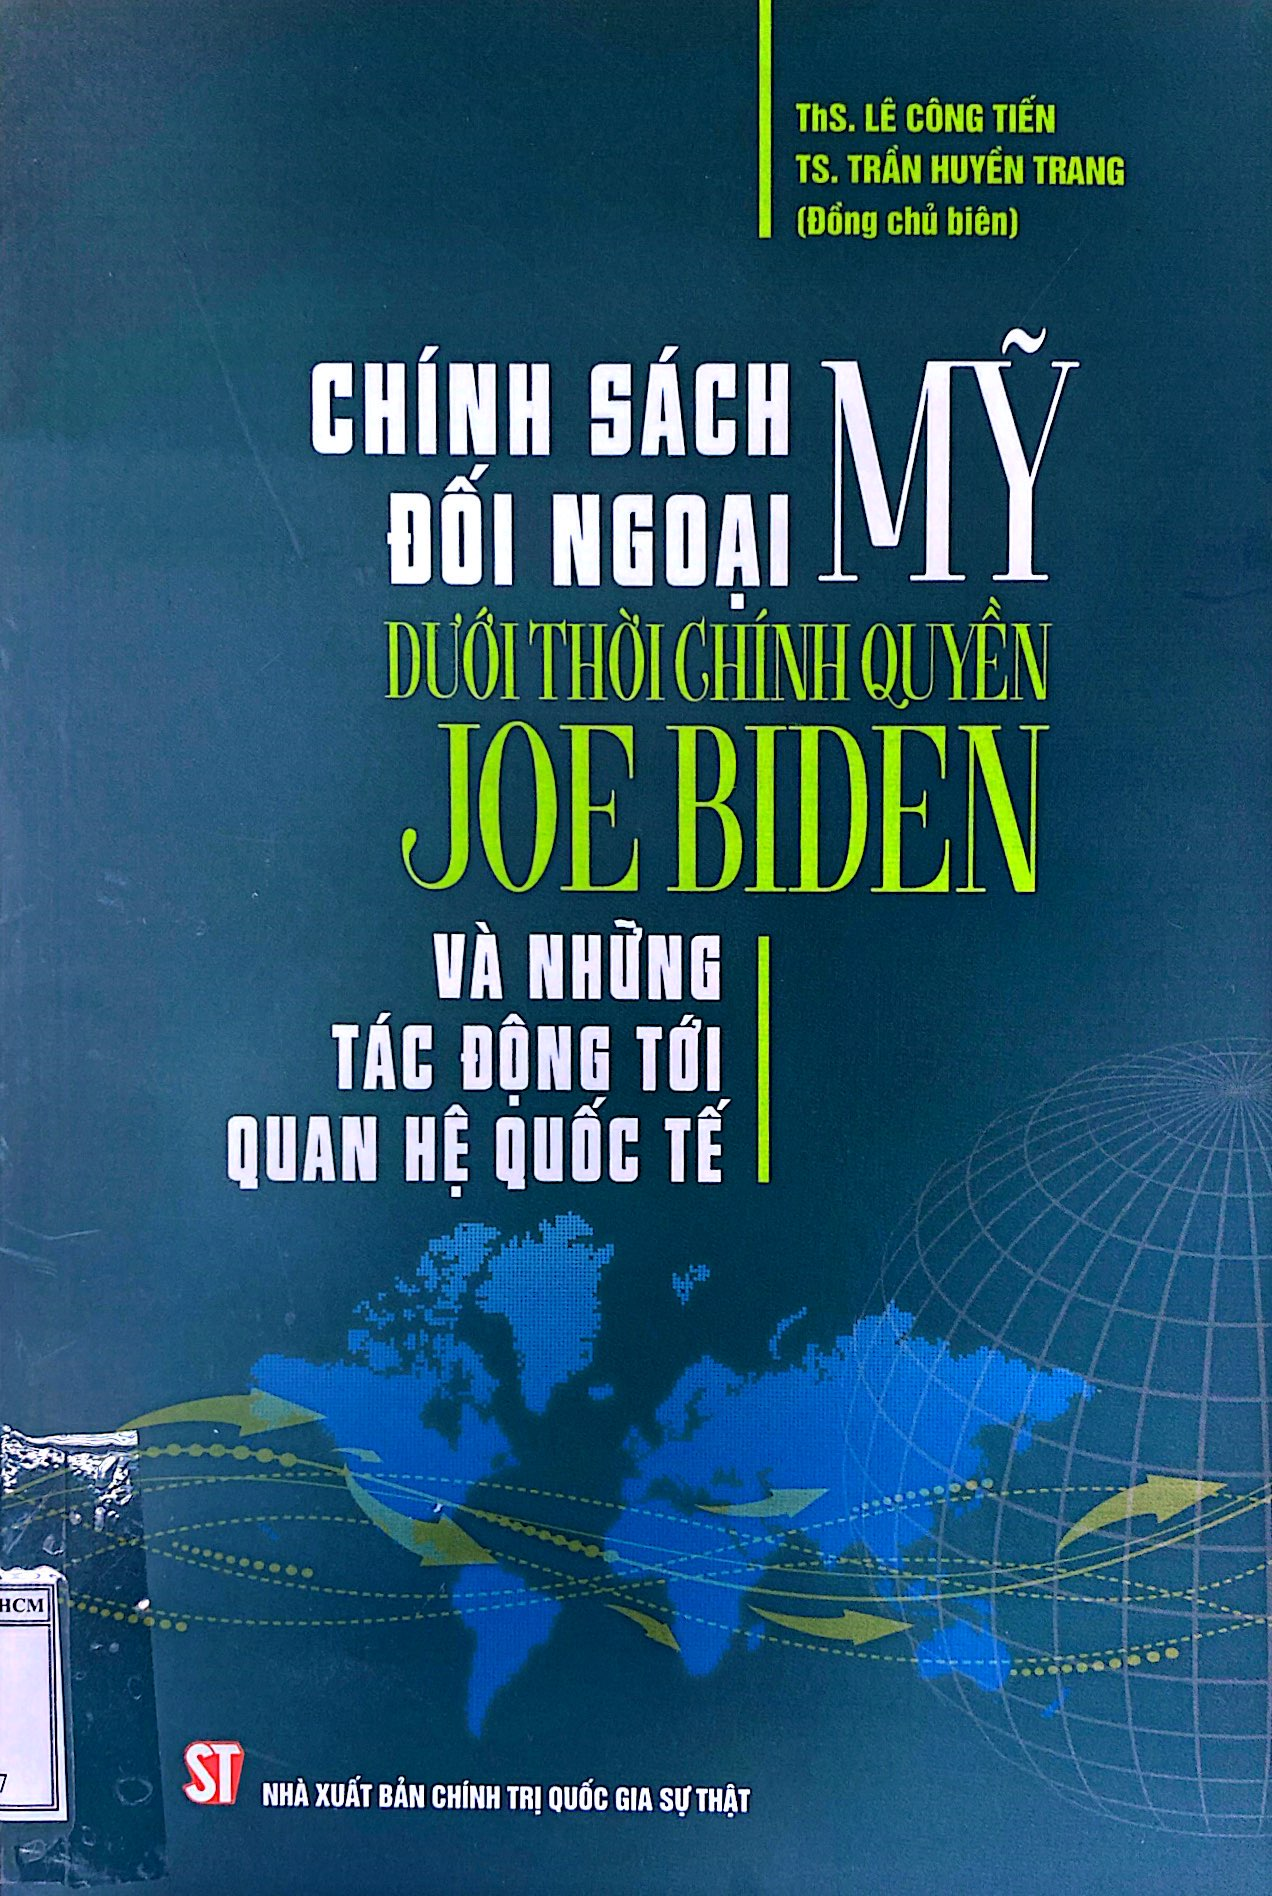 Chính sách đối ngoại Mỹ dưới thời chính quyền Joe Biden và những tác động tới quan hệ quốc tế